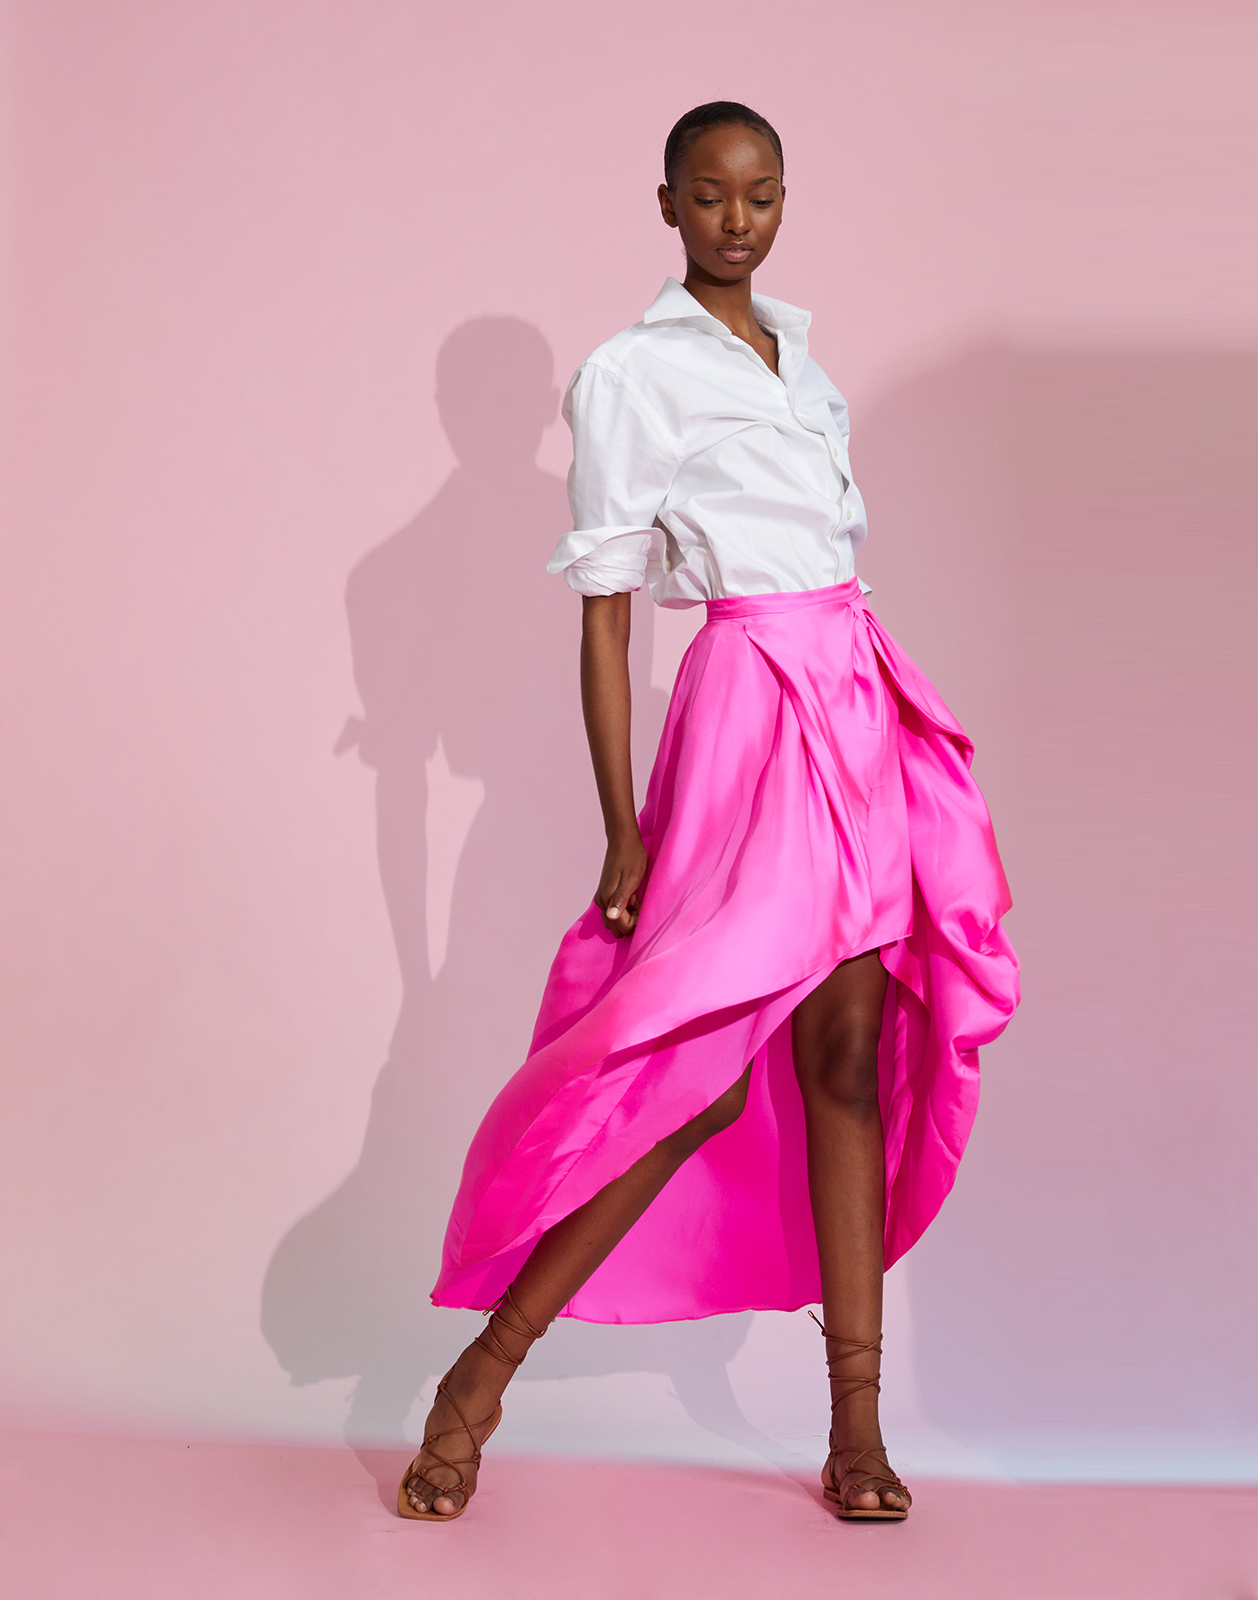 Silk bow skirt - pink